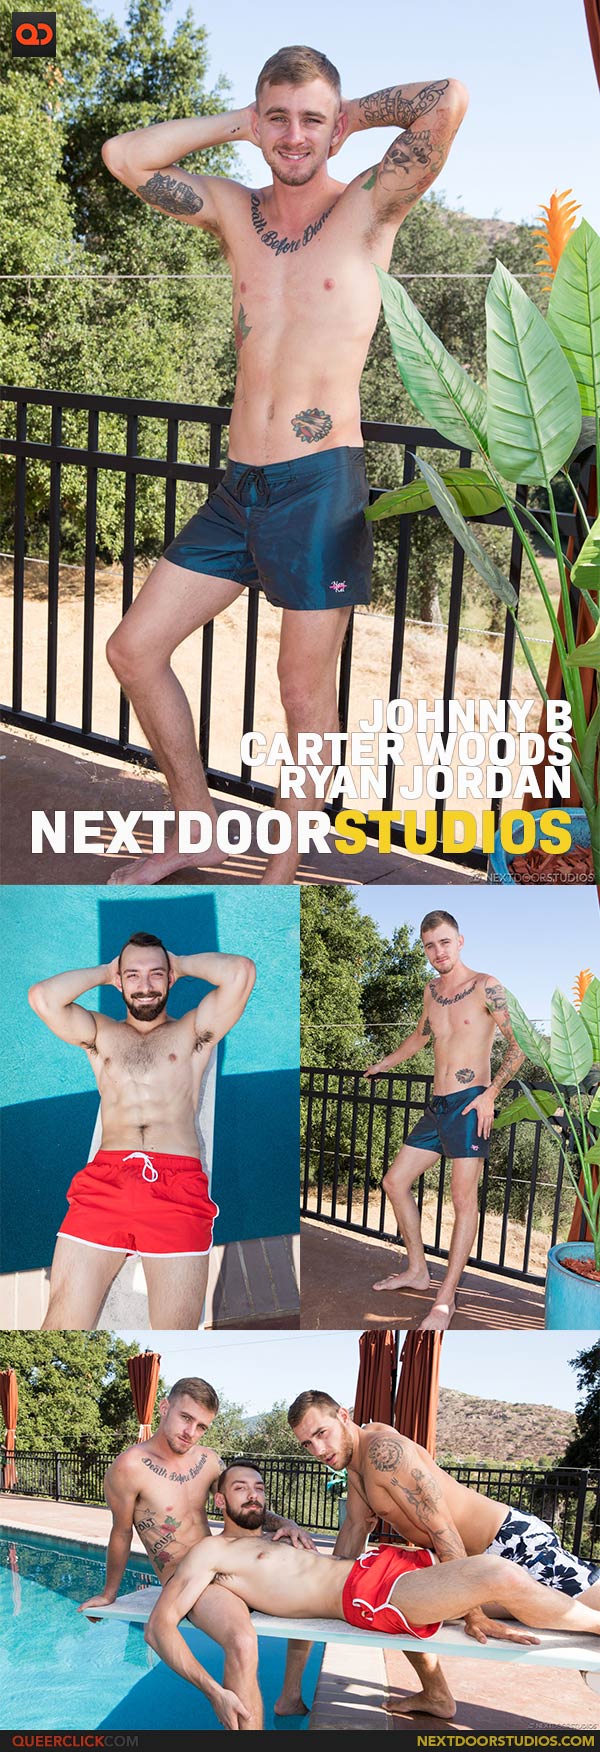 Next Door Studios:  Ryan Jordan, Carter Woods and Johnny B